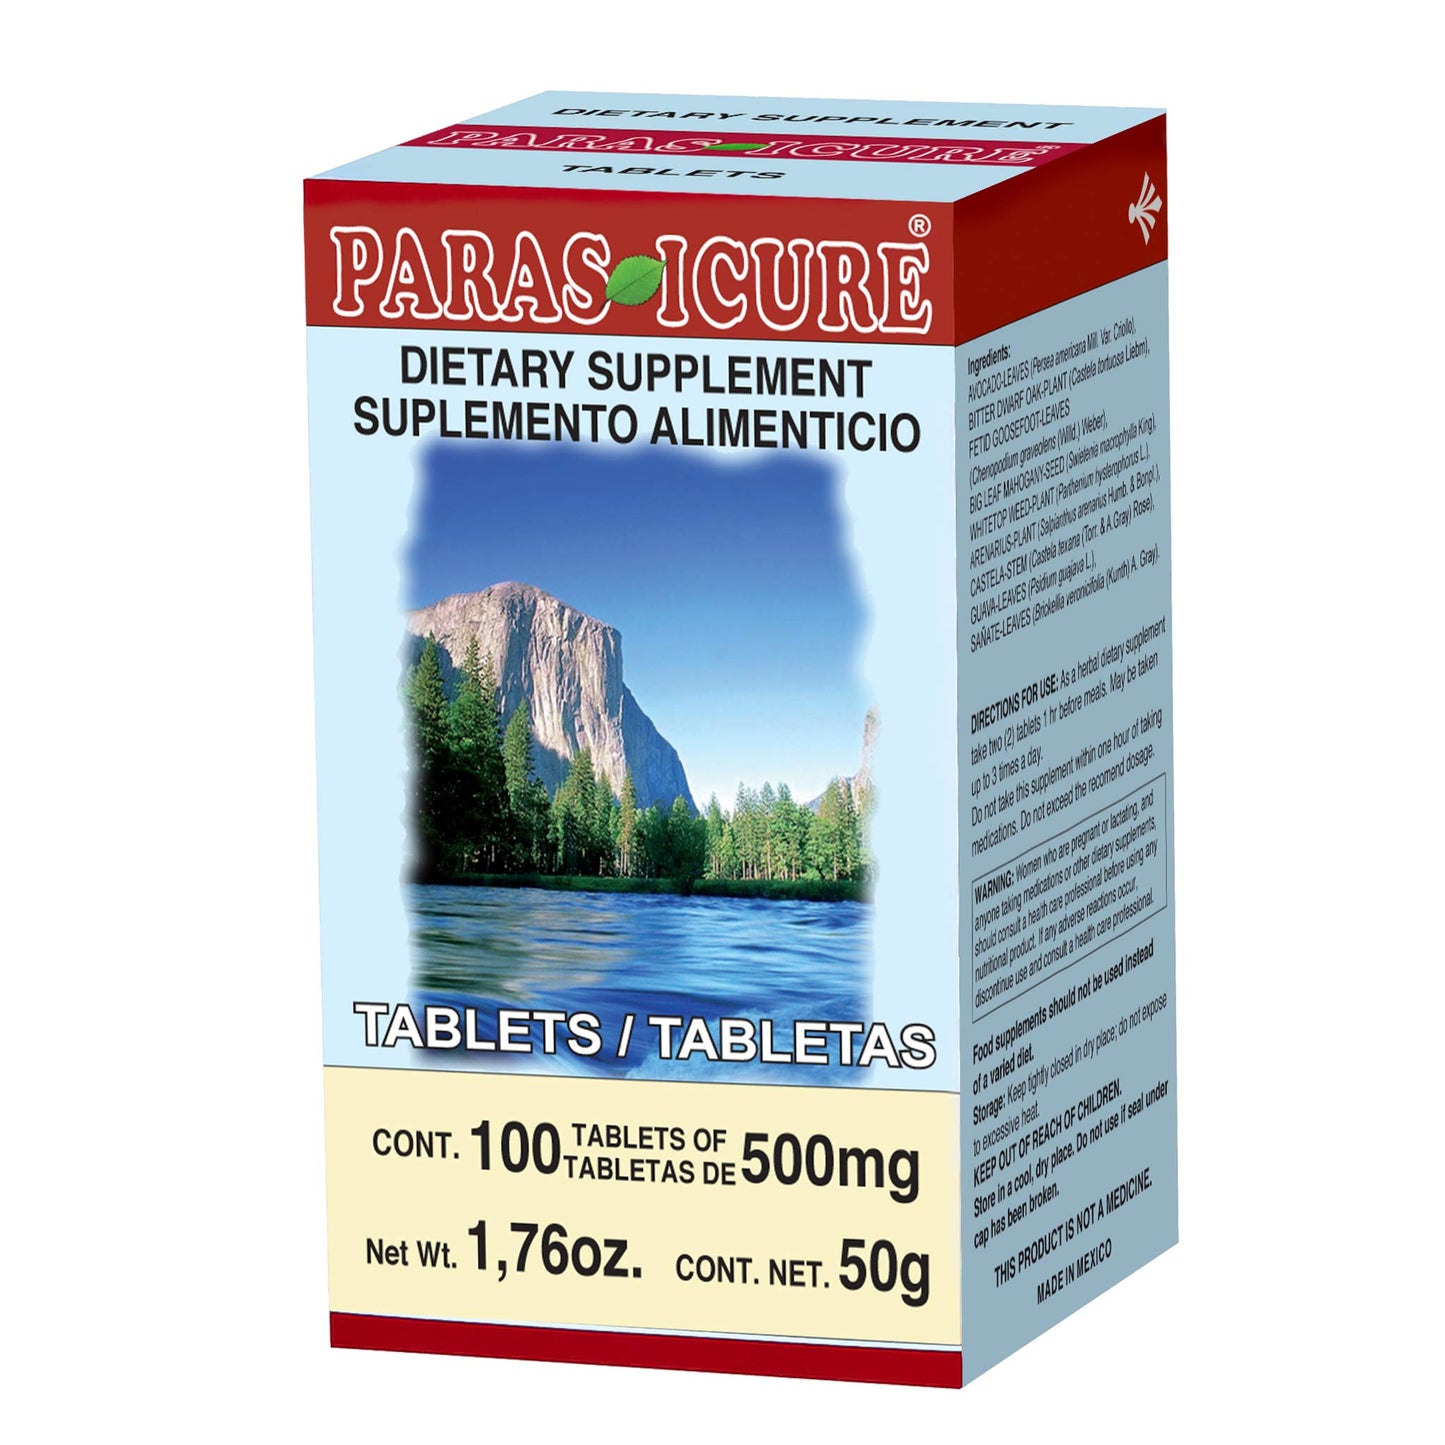 PARASICURE ® 100 tabletas